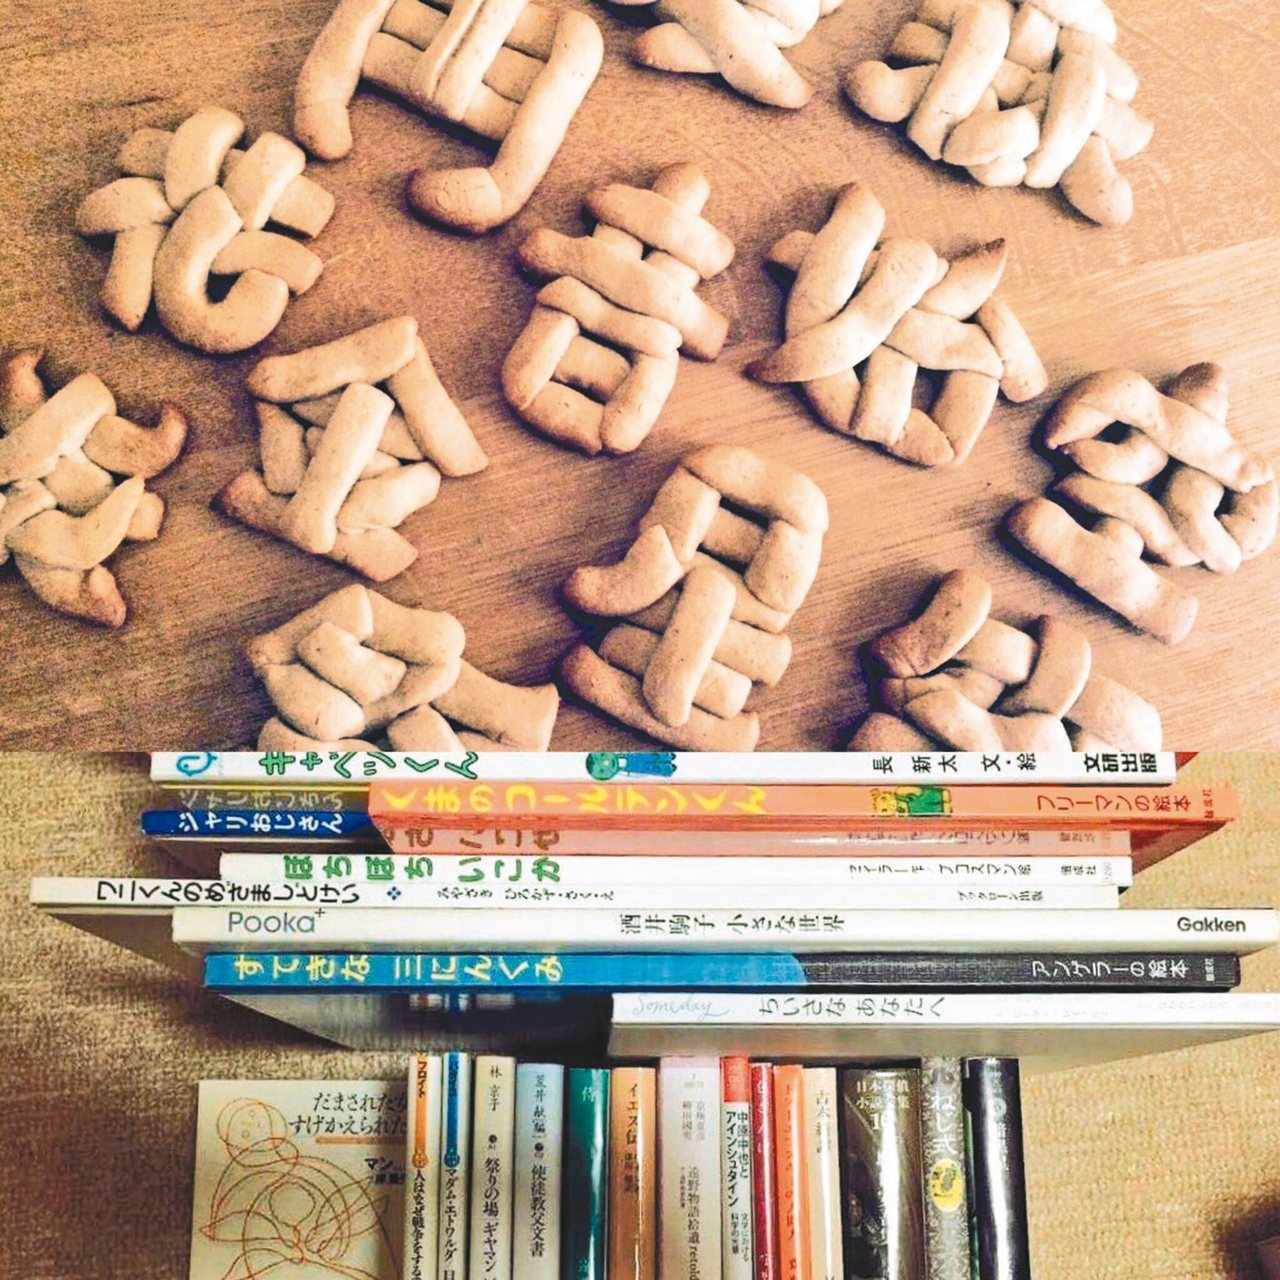 這些漢字餅乾，你認出來是哪些字嗎？ 圖／取自朝日新聞網站